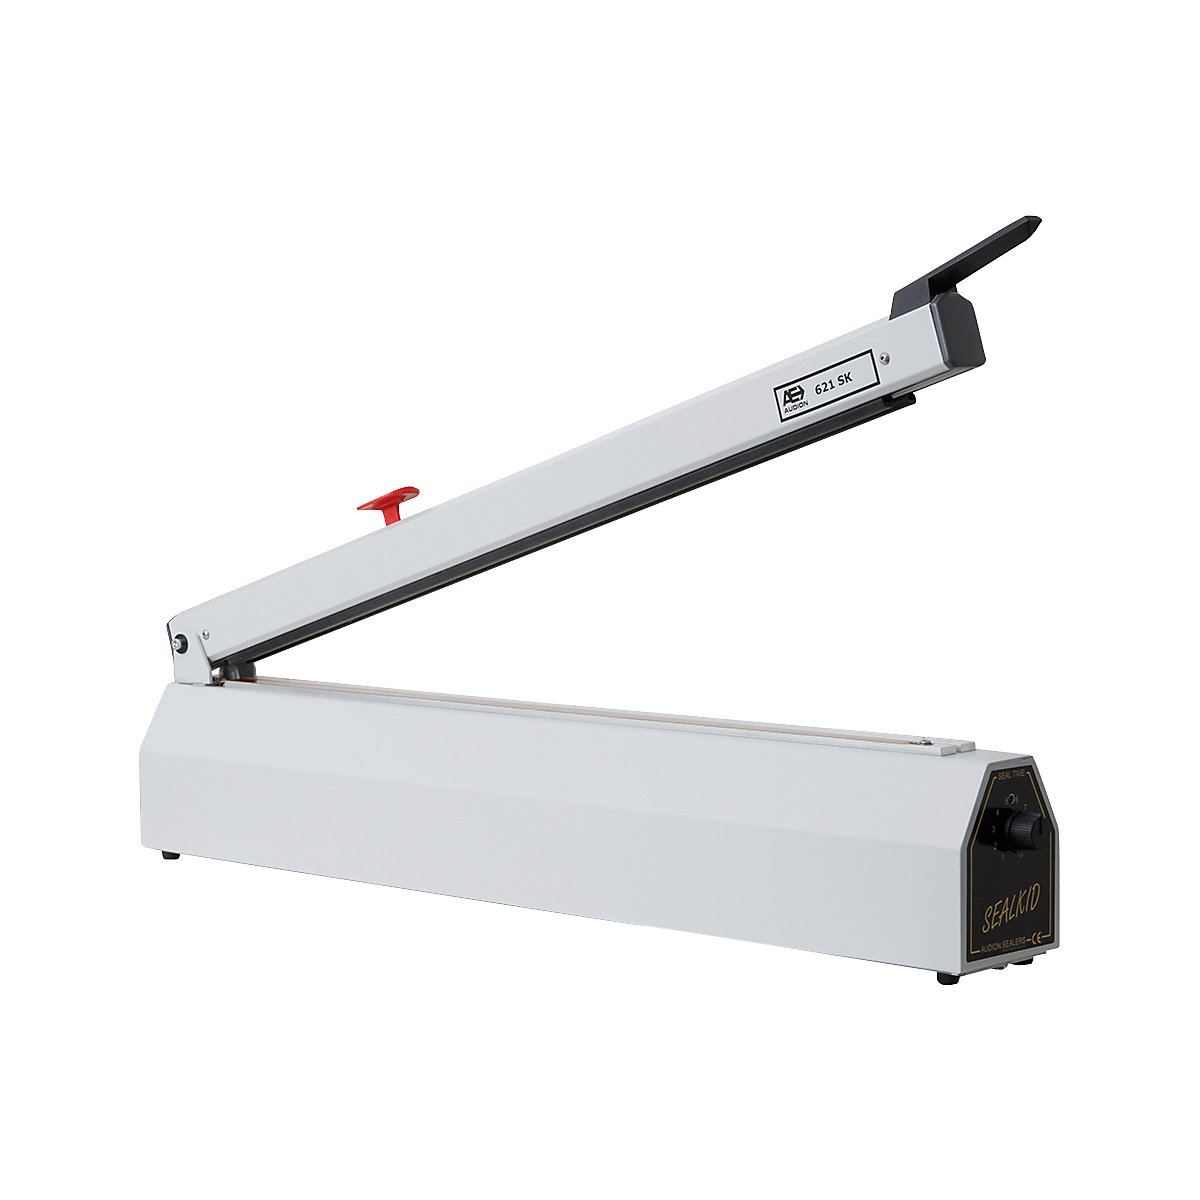 Folienschweiß-Tischgerät SEALKID, mit Schneidevorrichtung, Schweißnaht LxB 621 x 3 mm-5